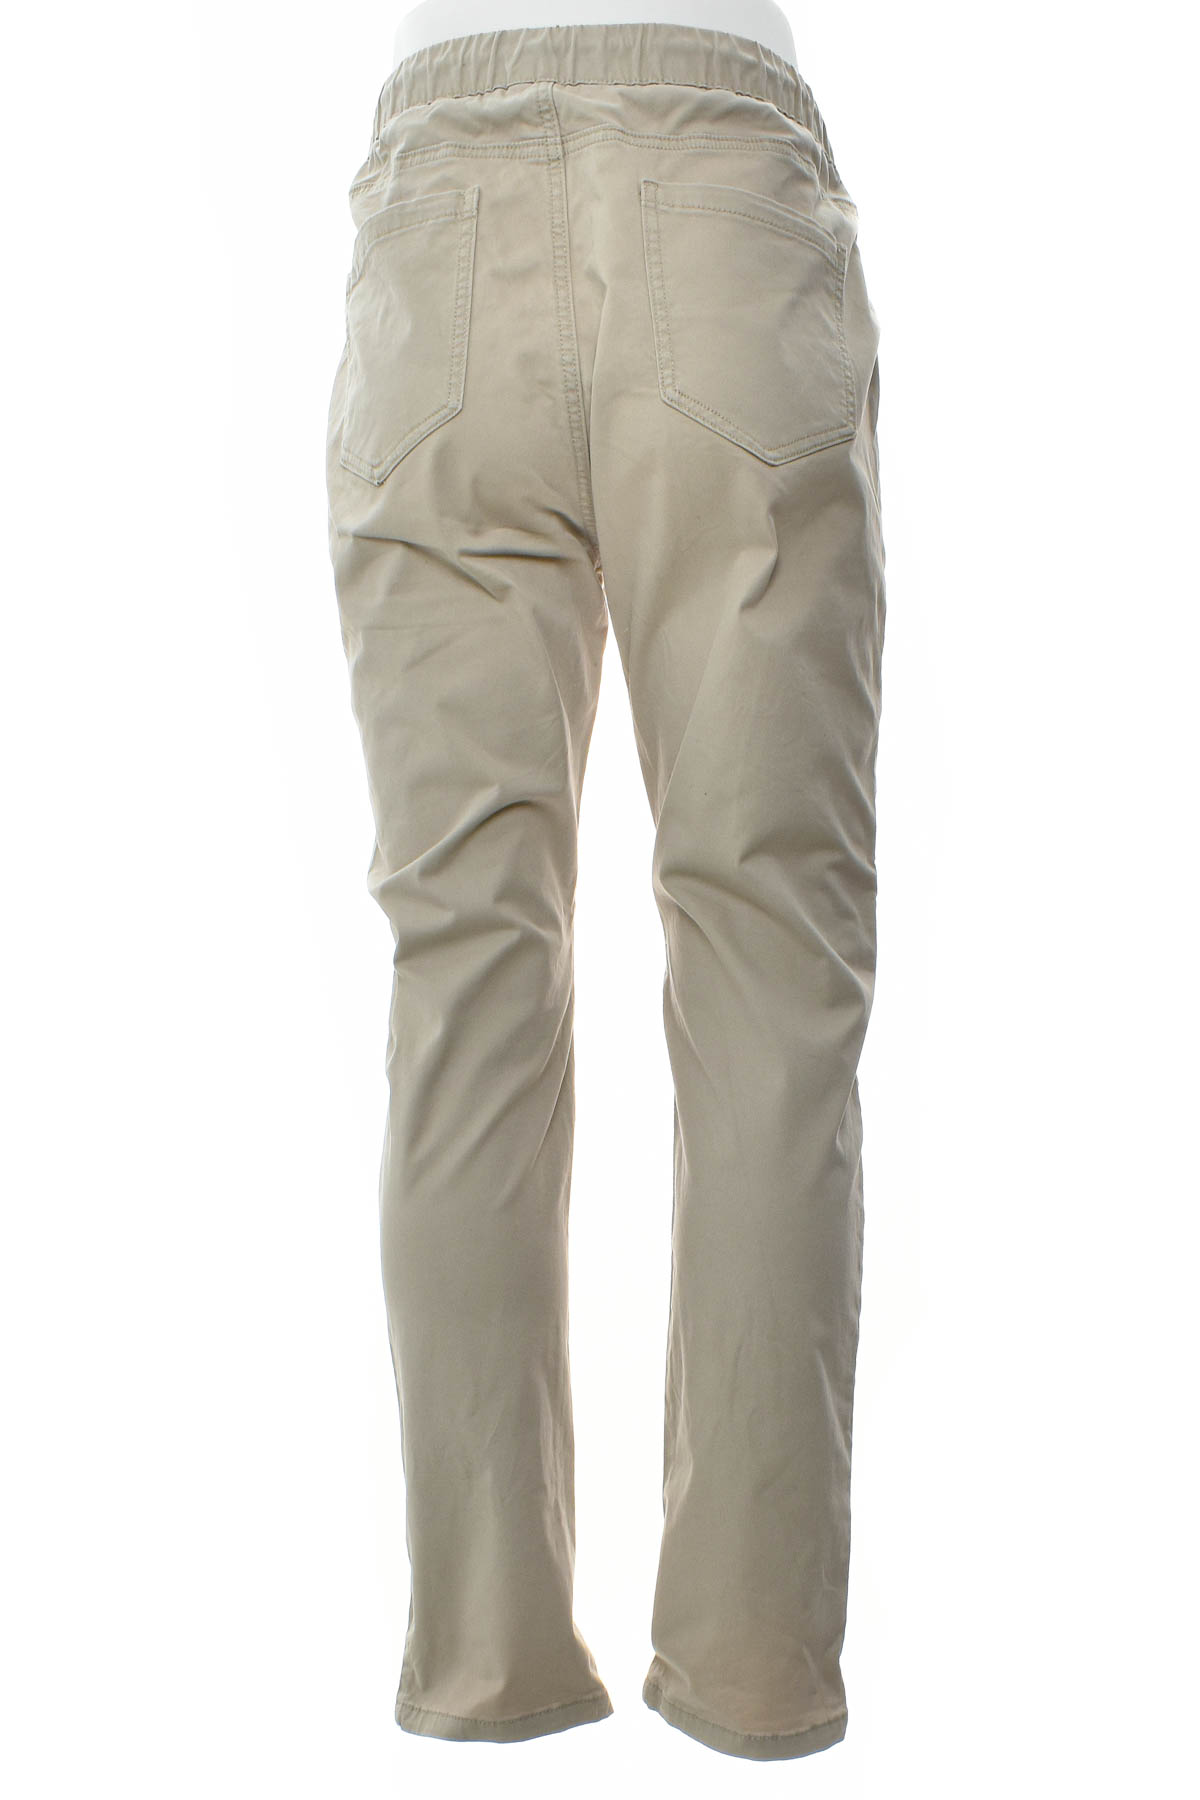 Pantalon pentru bărbați - CONNOR - 1